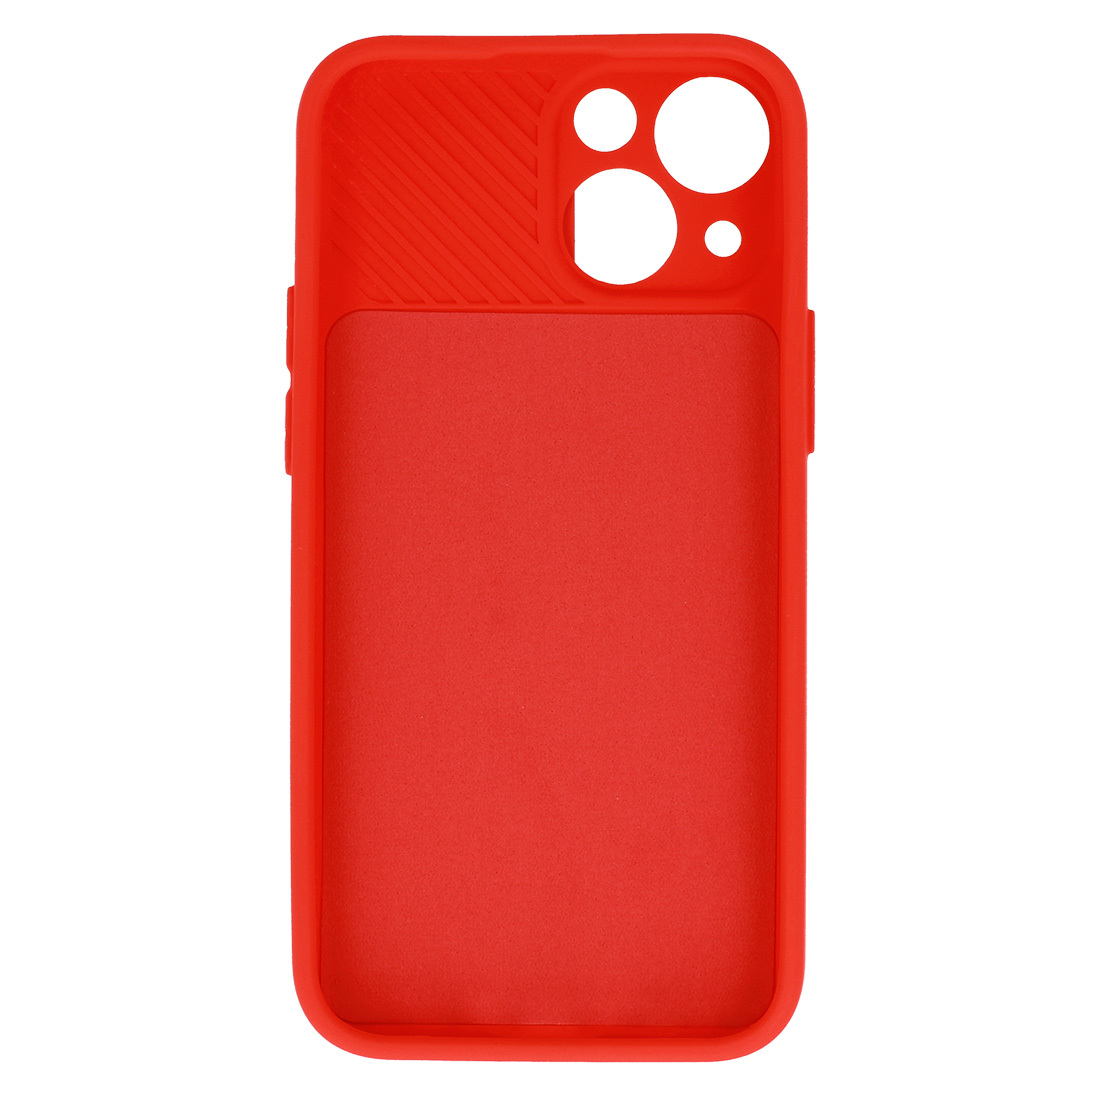 Pokrowiec etui z elastycznego TPU Camshield Soft Case czerwone APPLE iPhone XS / 5